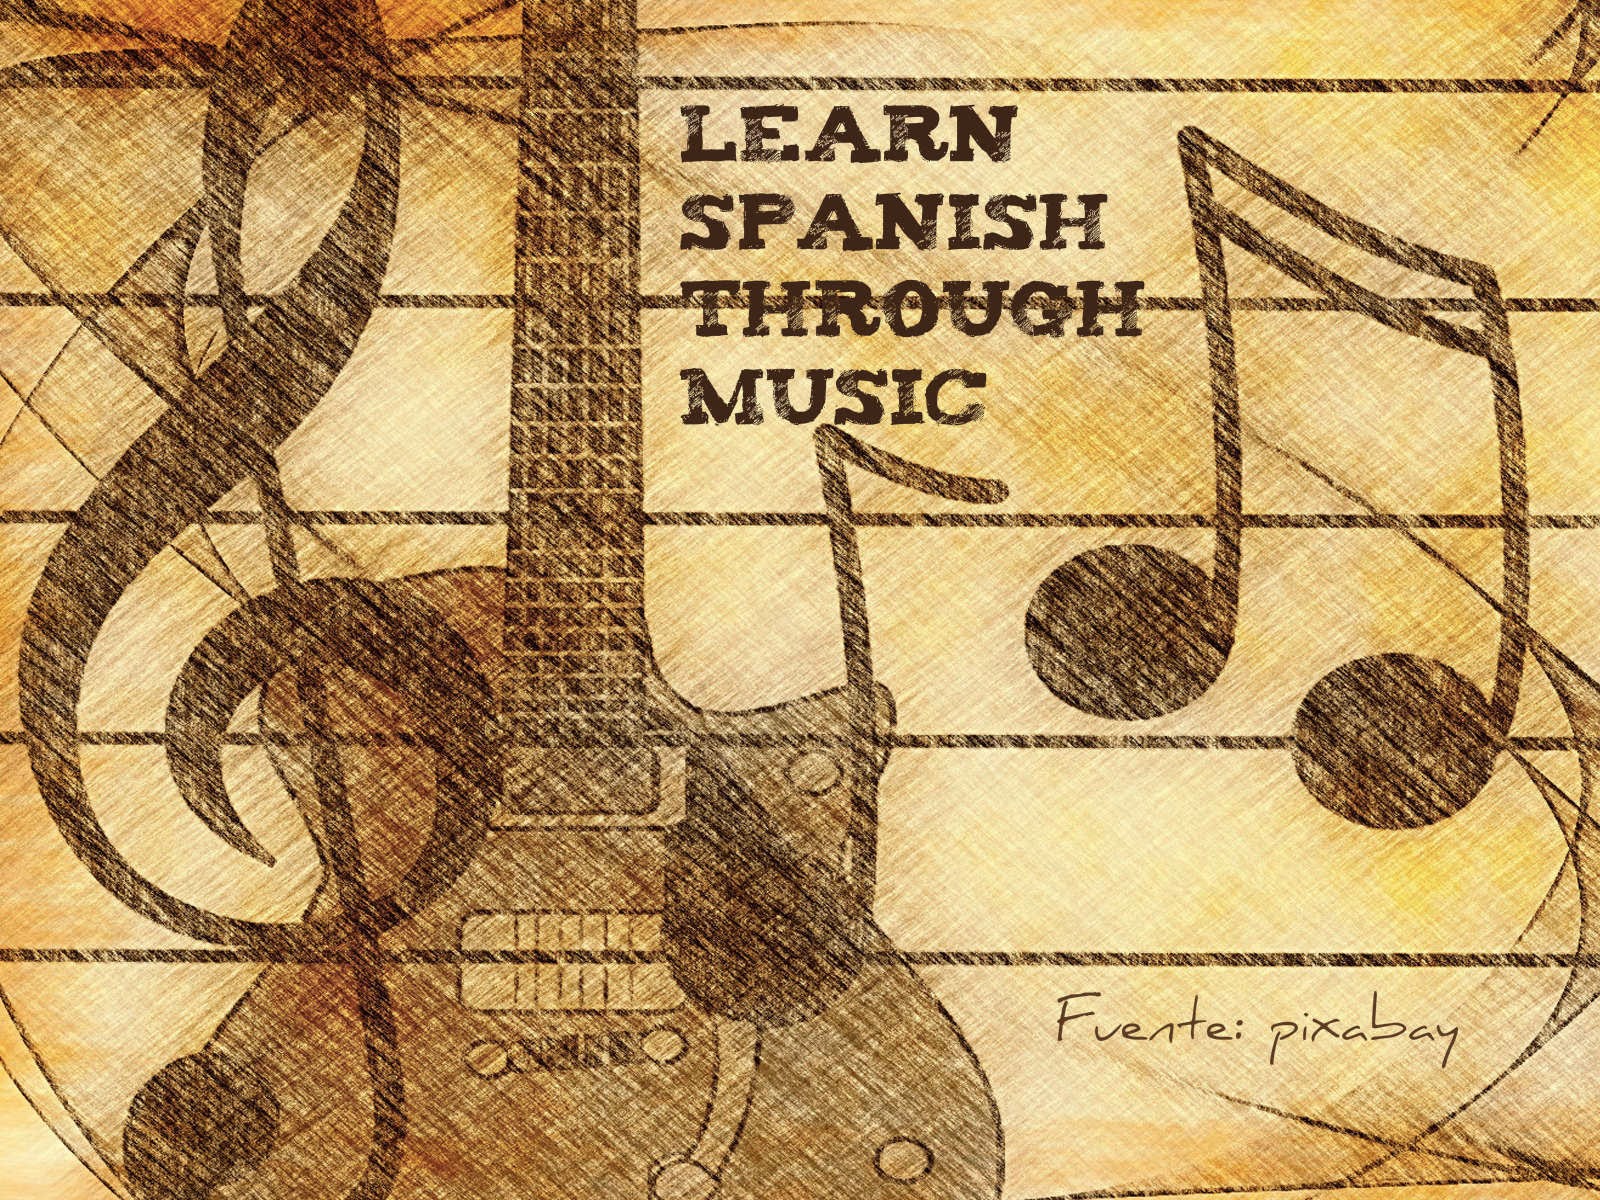 Learn Spanish through music